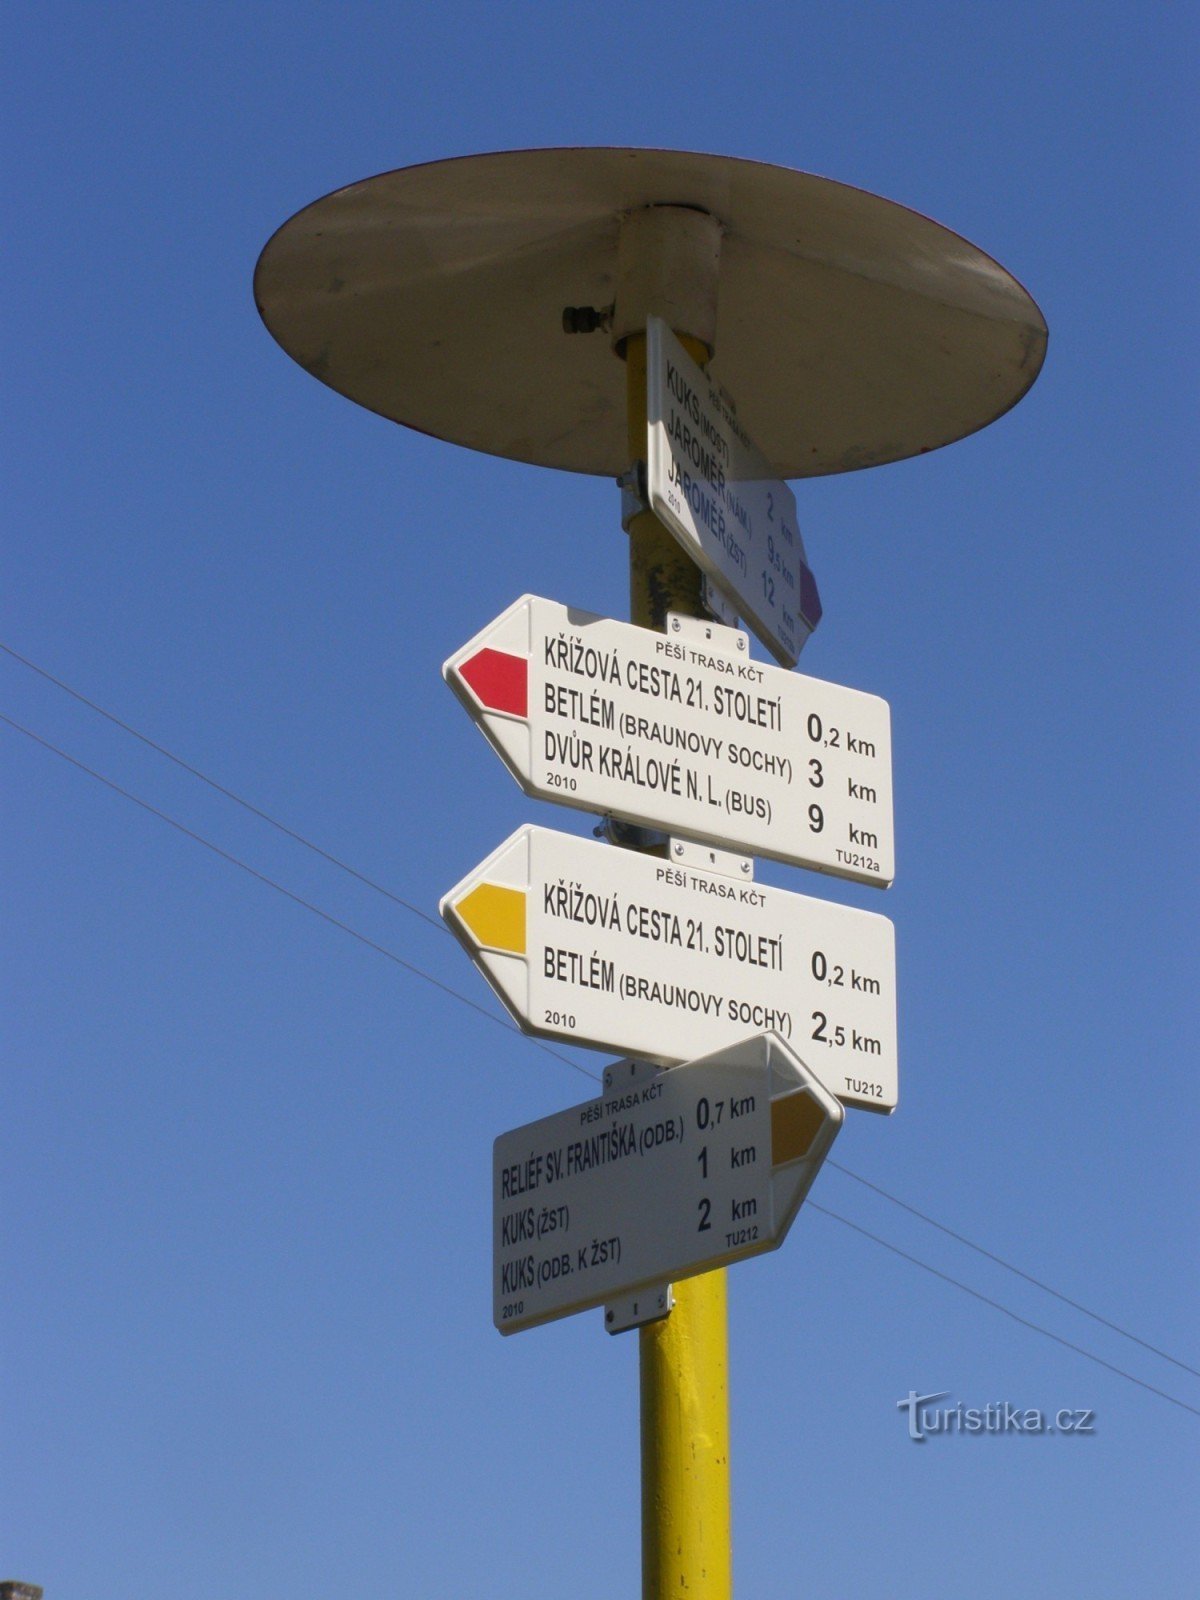 スタノヴィツェの観光交差点 - 21 世紀の十字架の駅の下